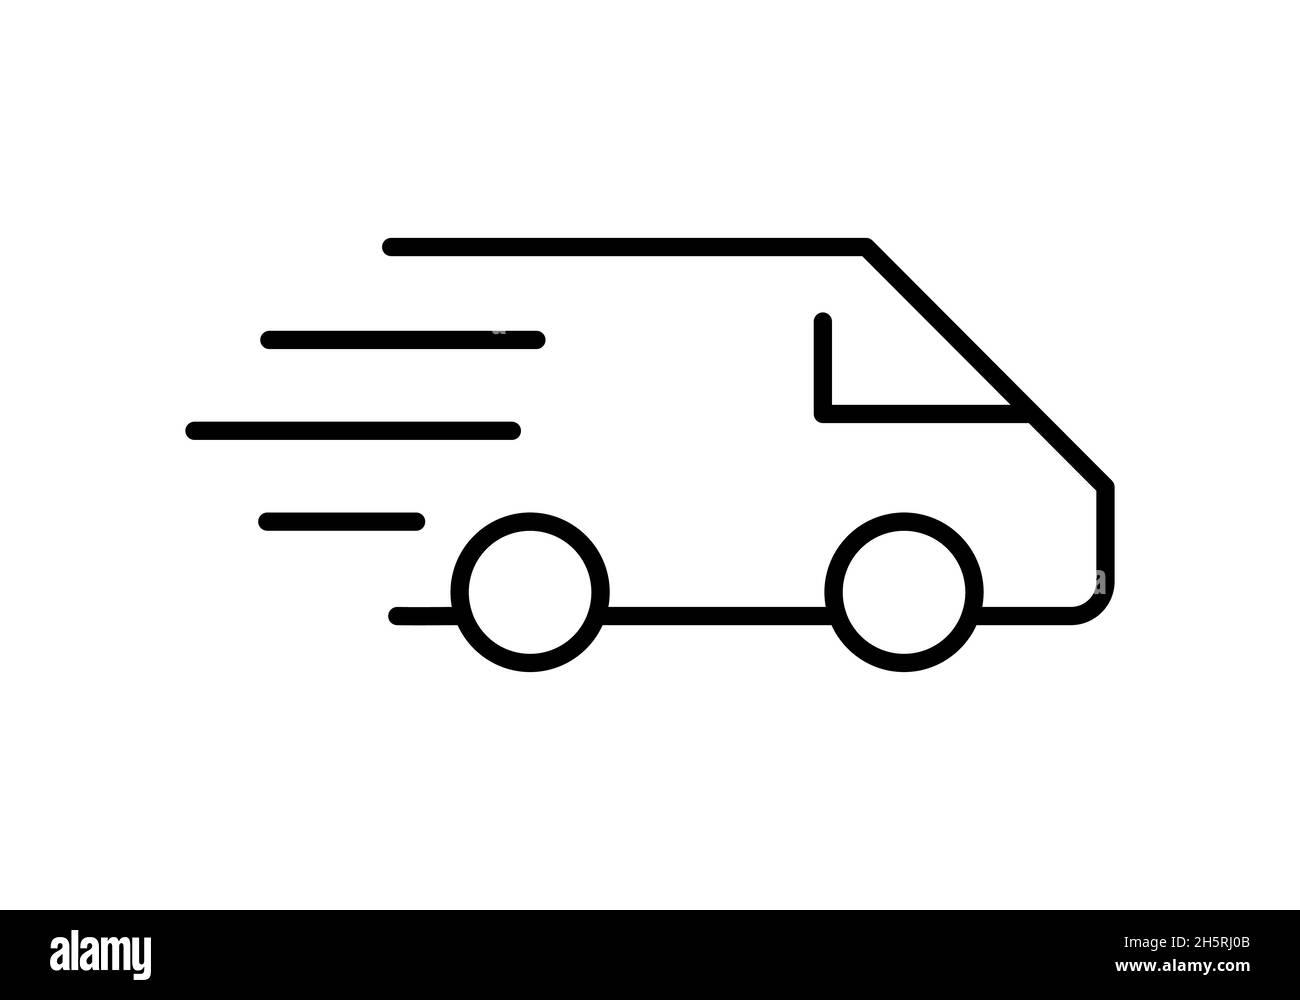 Lieferwagen-Liniensymbol. Schnelle Versandidee. Fracht, Distribution, Transportkonzept. Fahrendes Fahrzeug mit Linien, die Geschwindigkeit symbolisieren. Vektor flach Stock Vektor